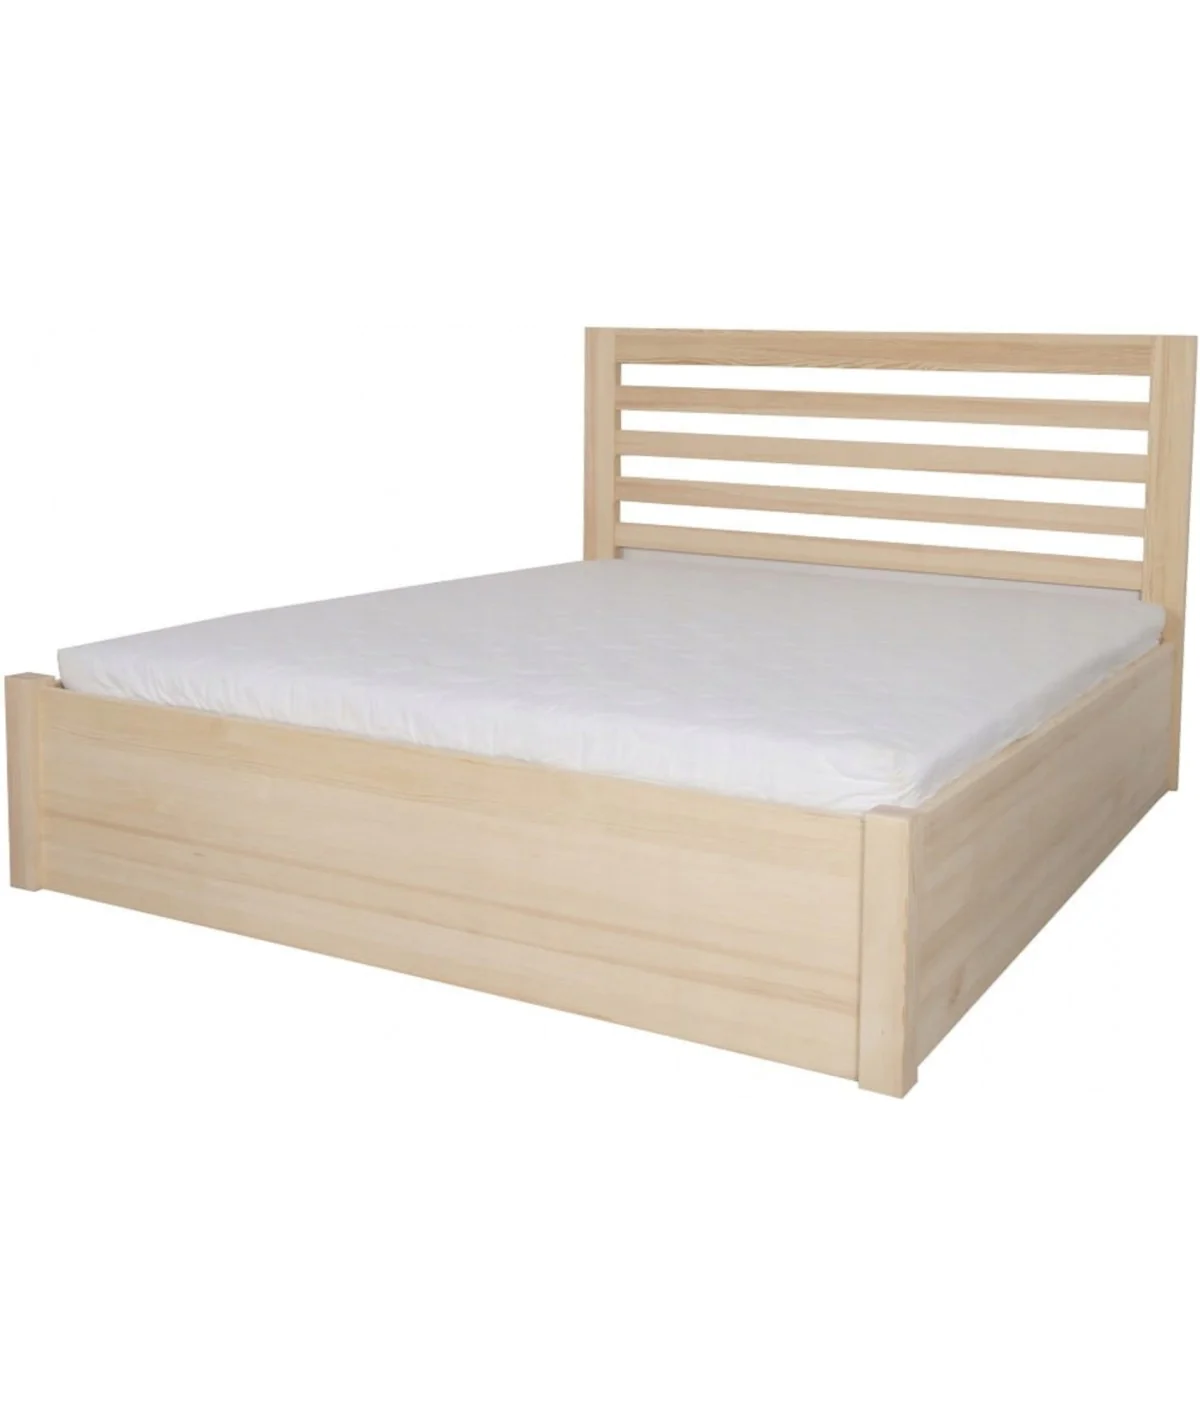 Łóżko bukowe KORAL 5 STOLMIS podnoszone na ramie drewnianej